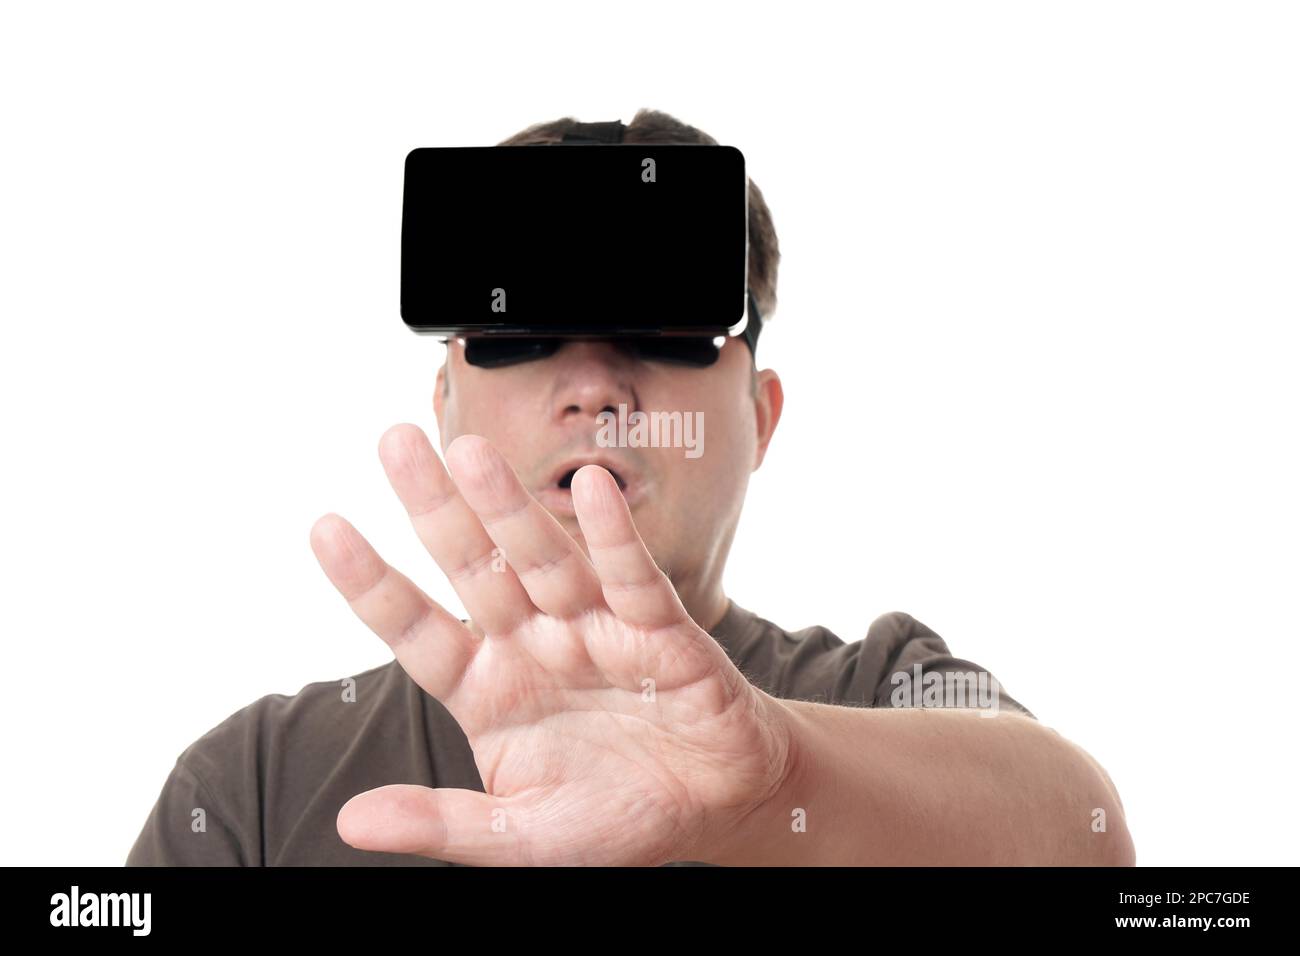 Homme portant un casque de réalité virtuelle VR s'adressant avec sa main Banque D'Images